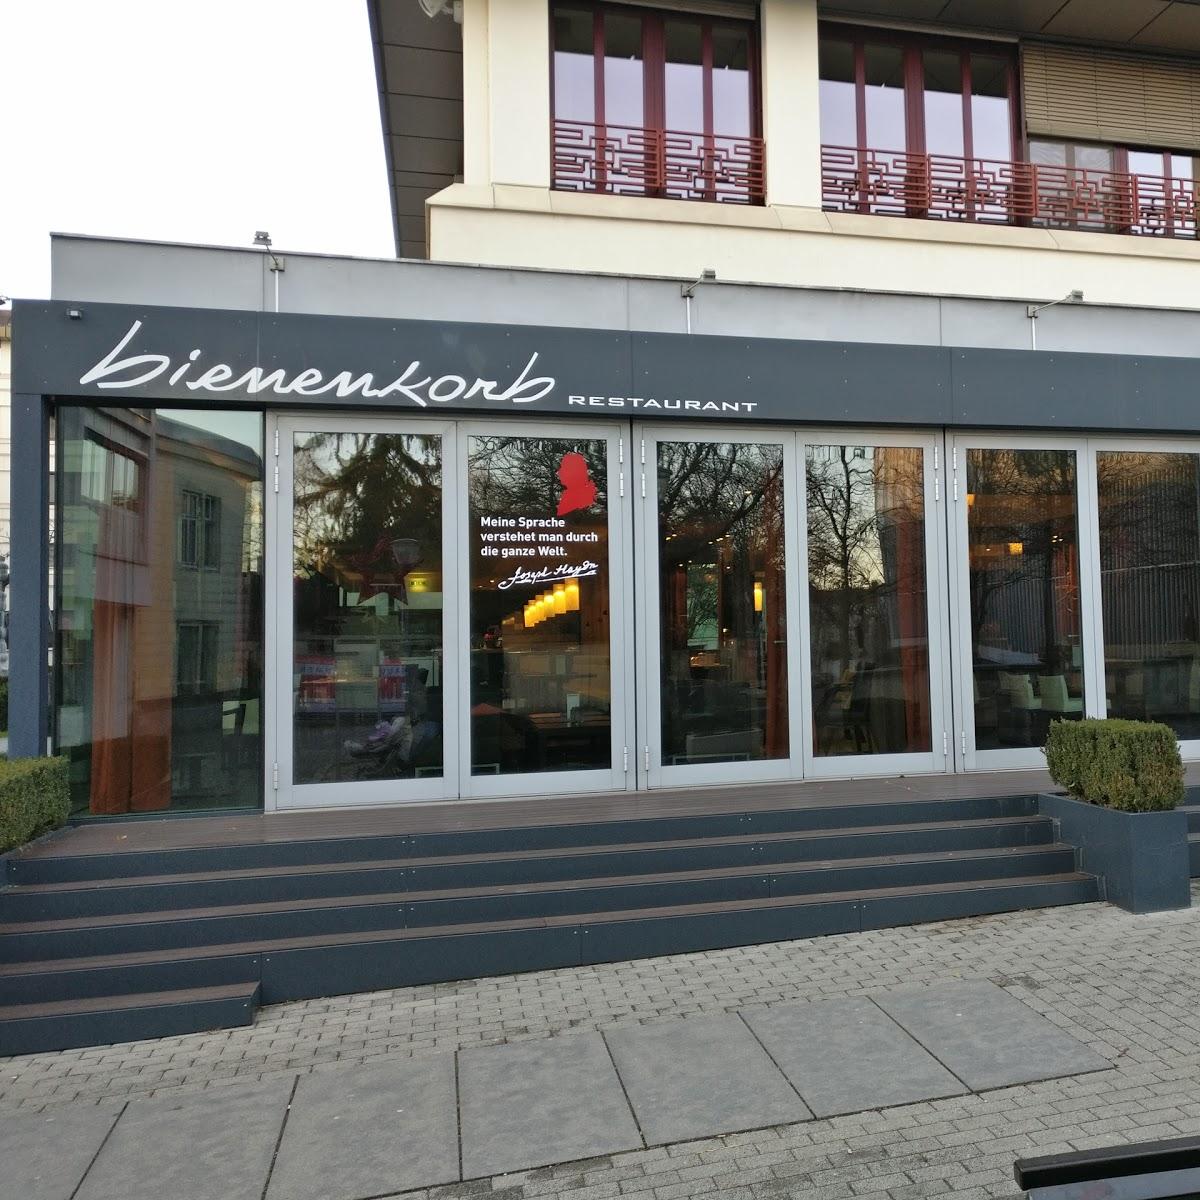 Restaurant "Restaurant Bienenkorb" in Eisenstadt